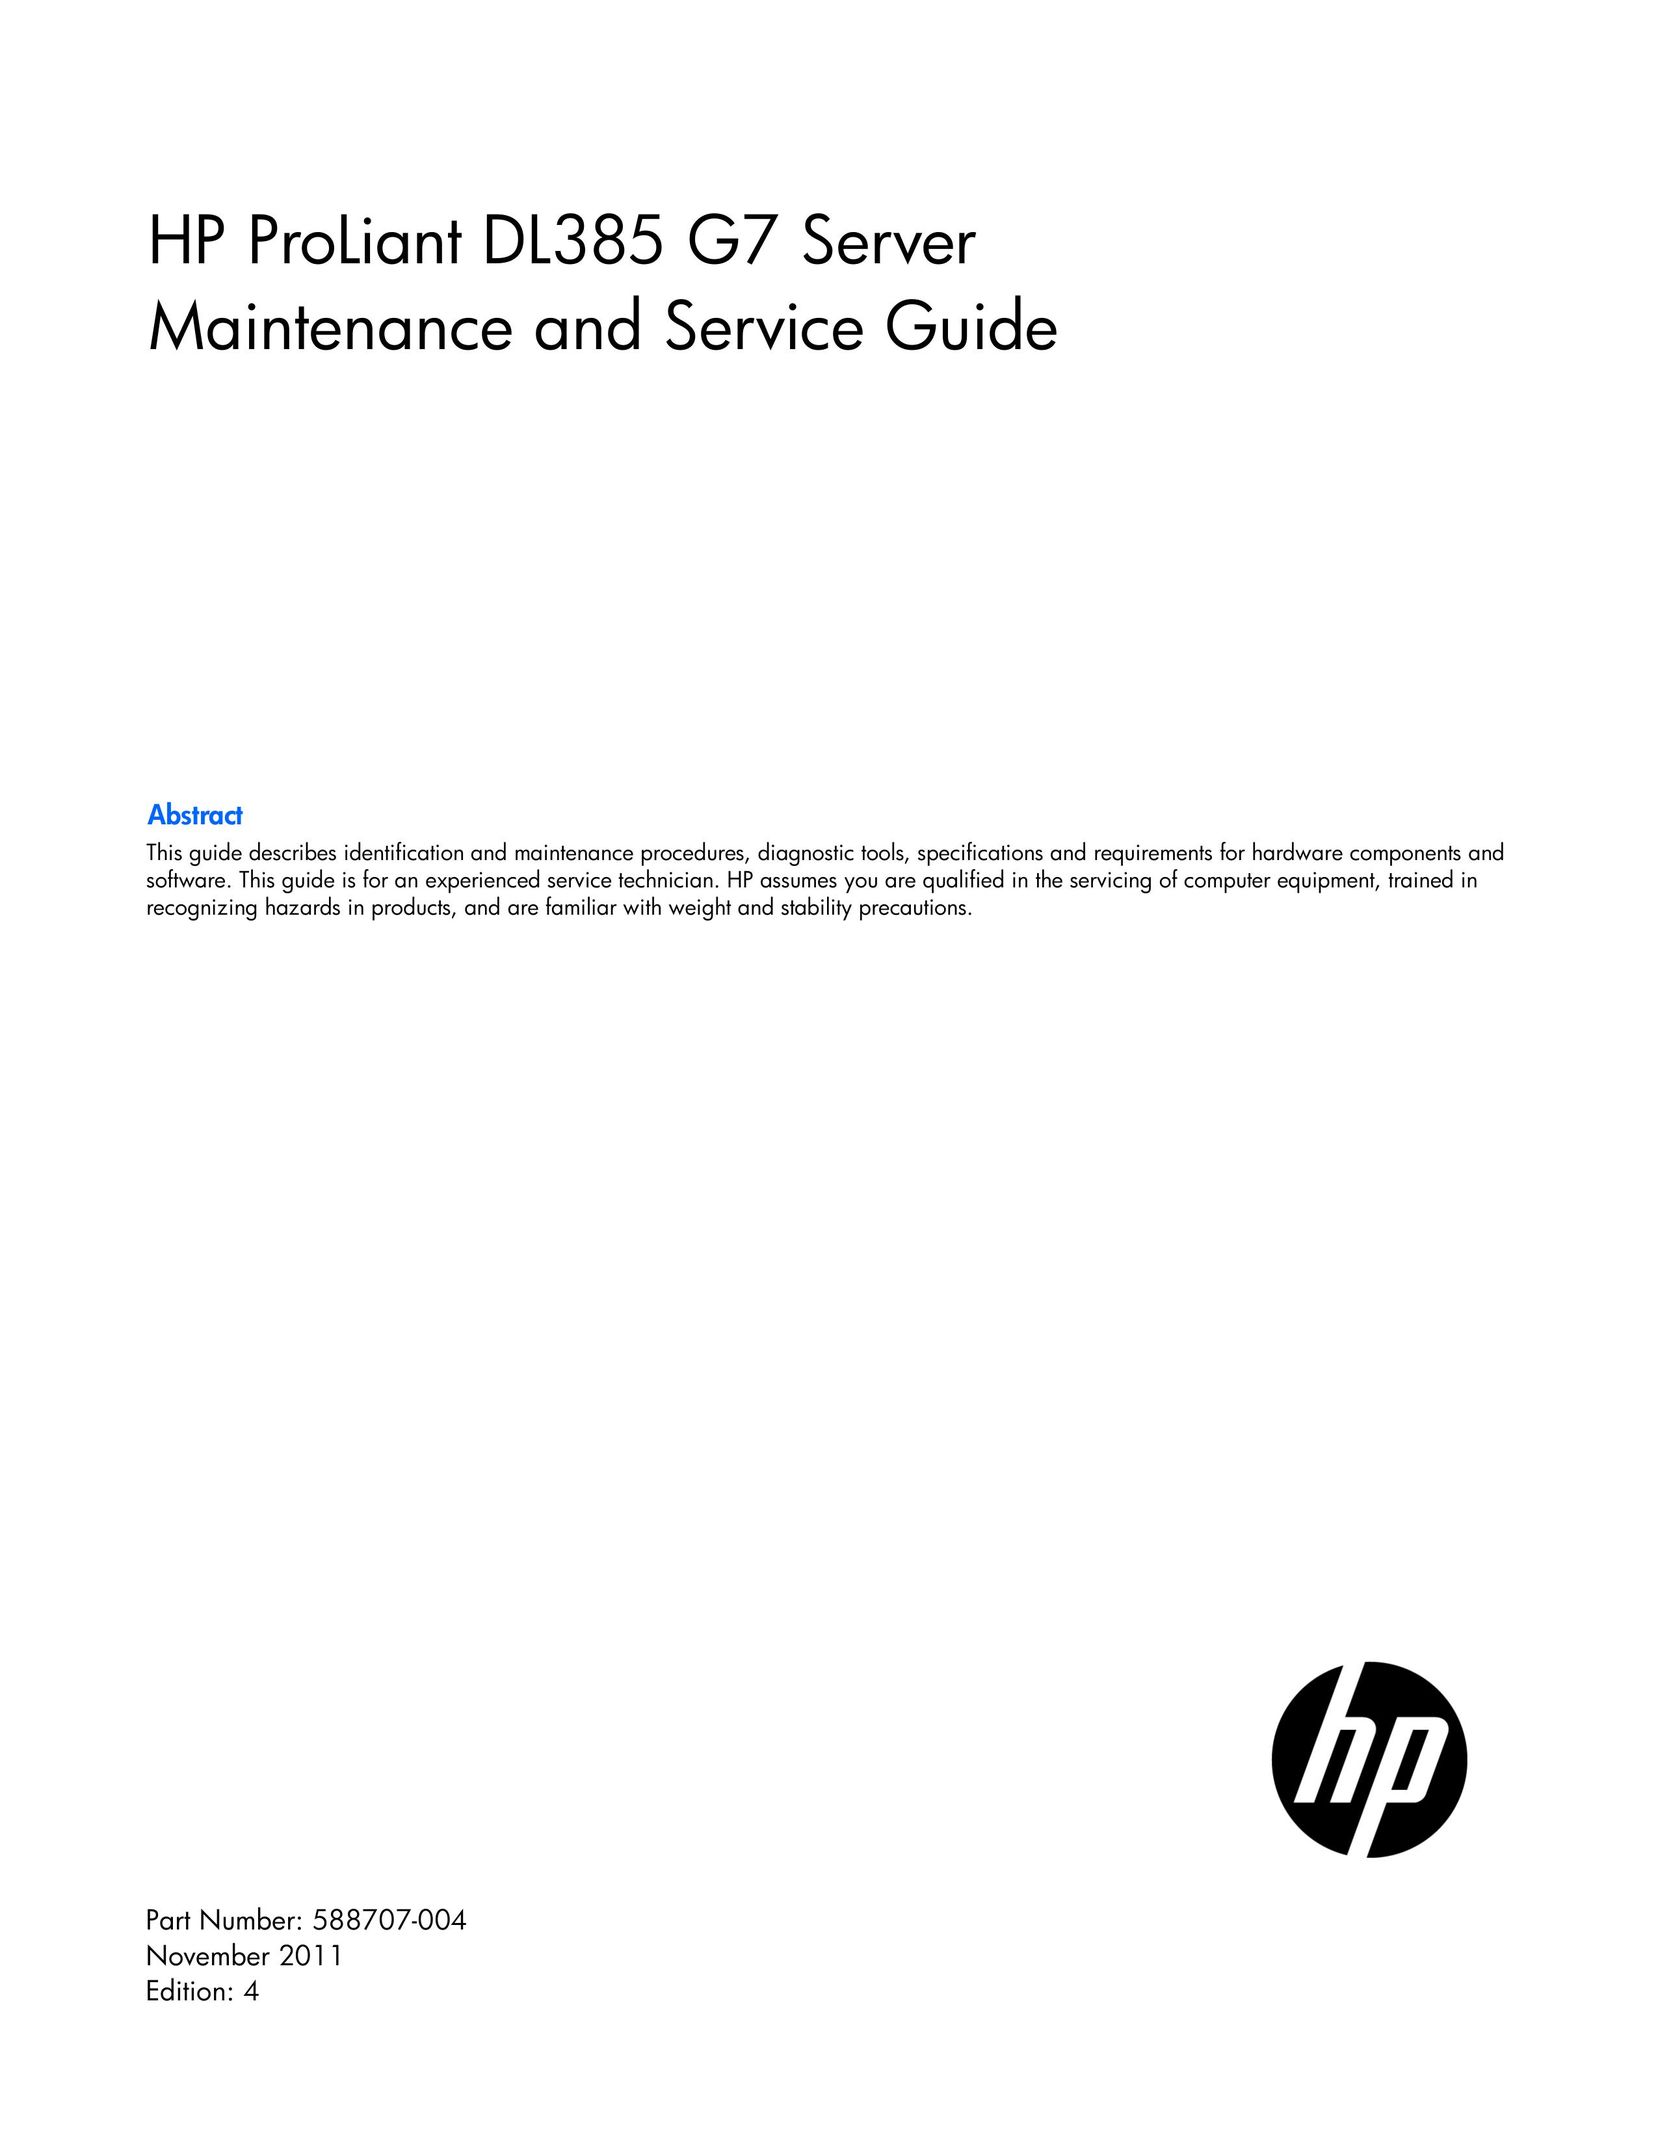 HP (Hewlett-Packard) 654853-001 Server User Manual